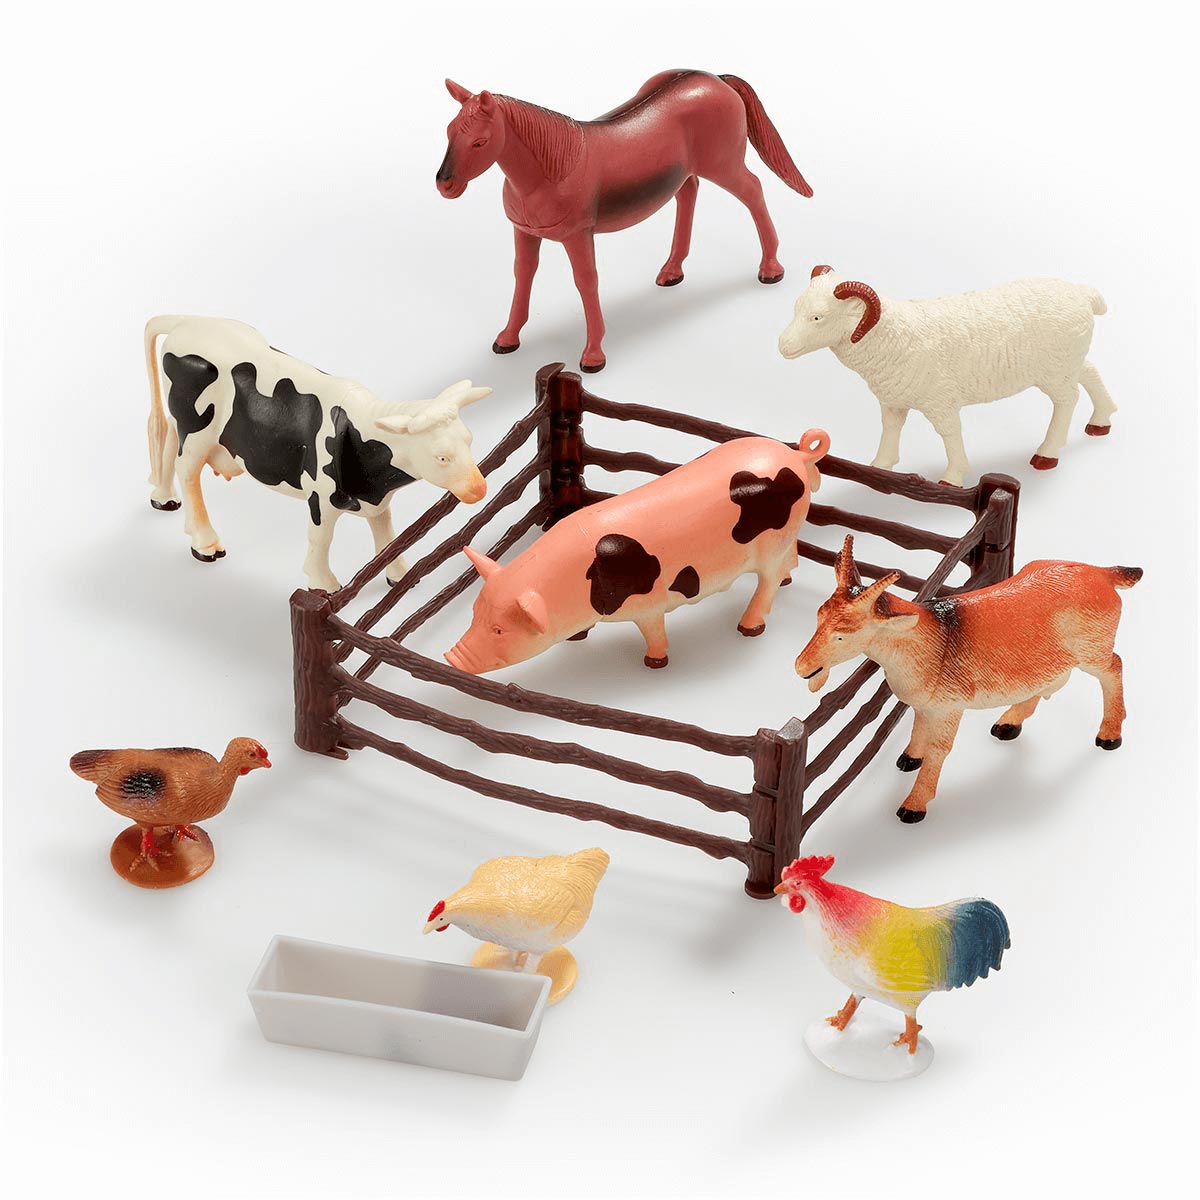 Juguetes y figuras de animales de la granja